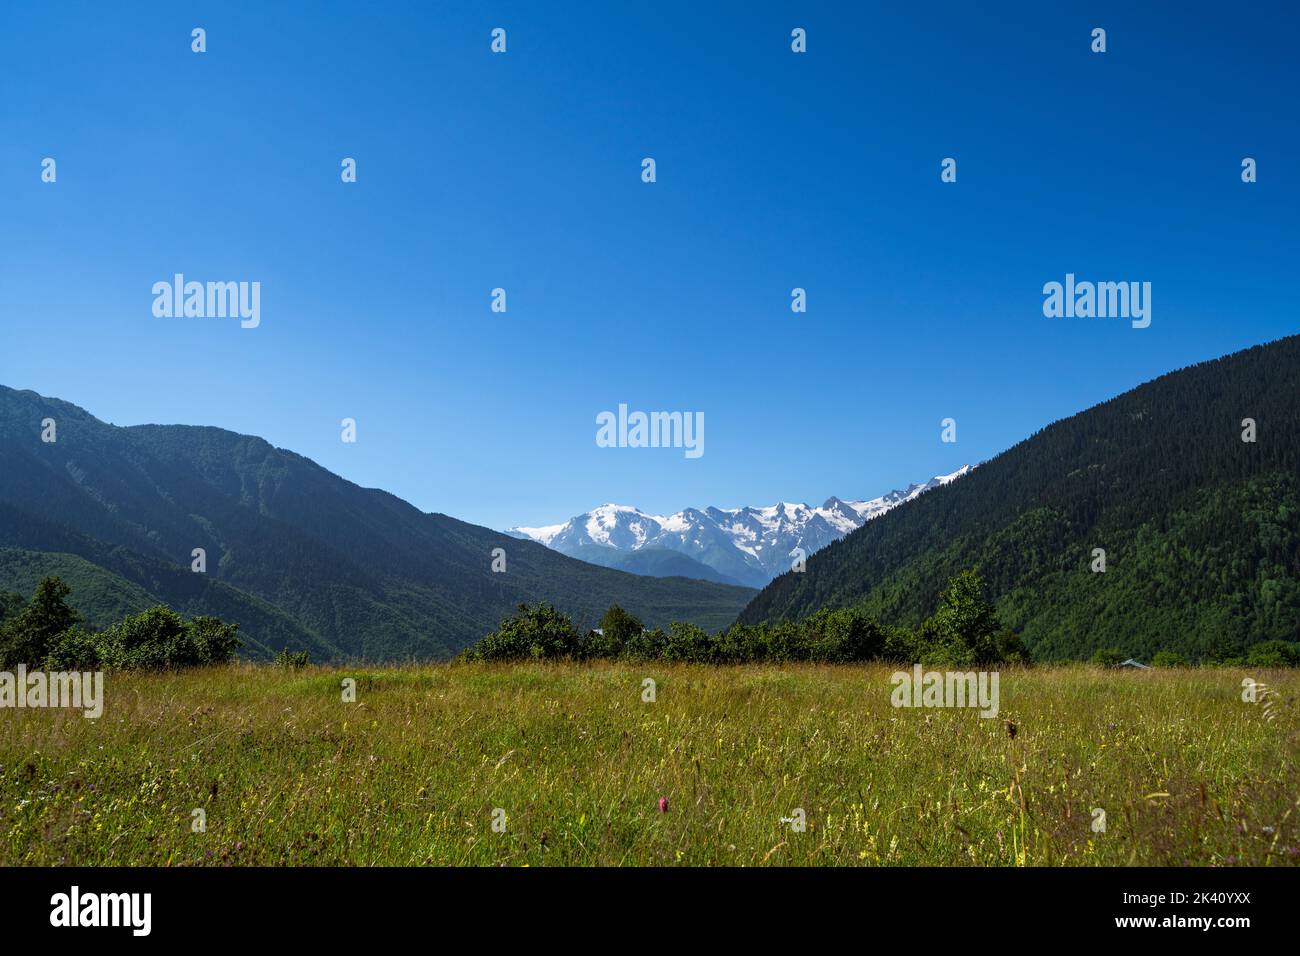 Laila mountains in Upper Svaneti, Georgia/ View from Mazeri village. Stock Photo